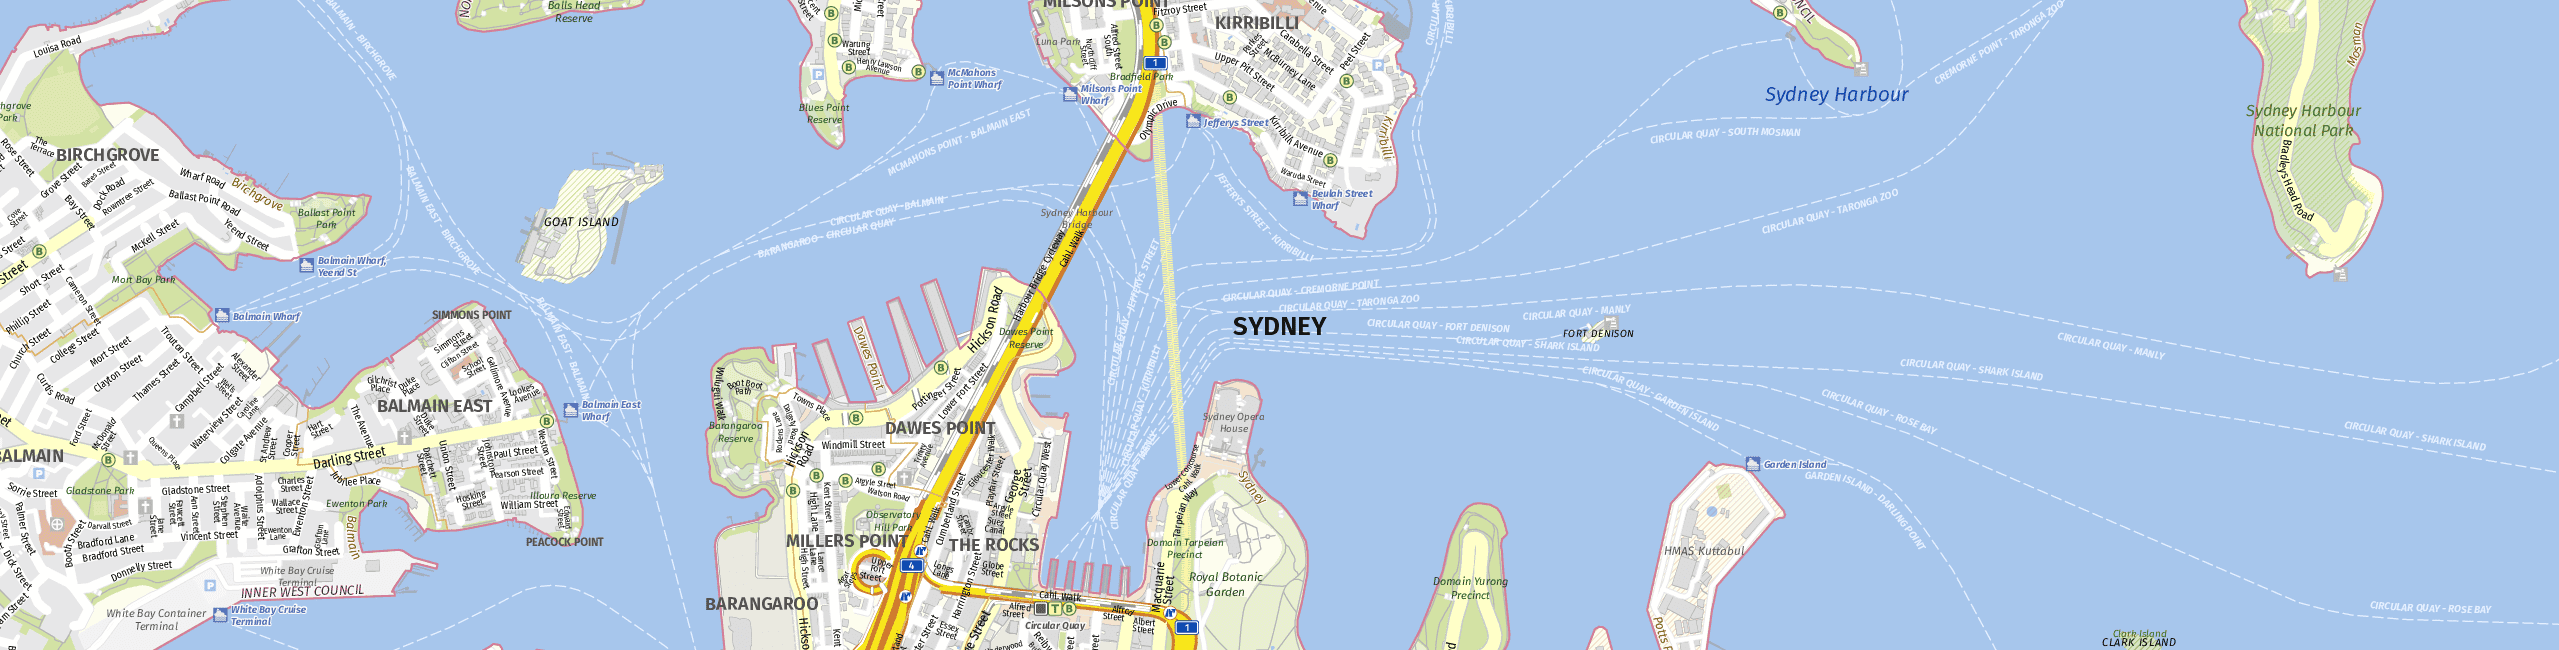 Stadtplan Sydney zum Downloaden.